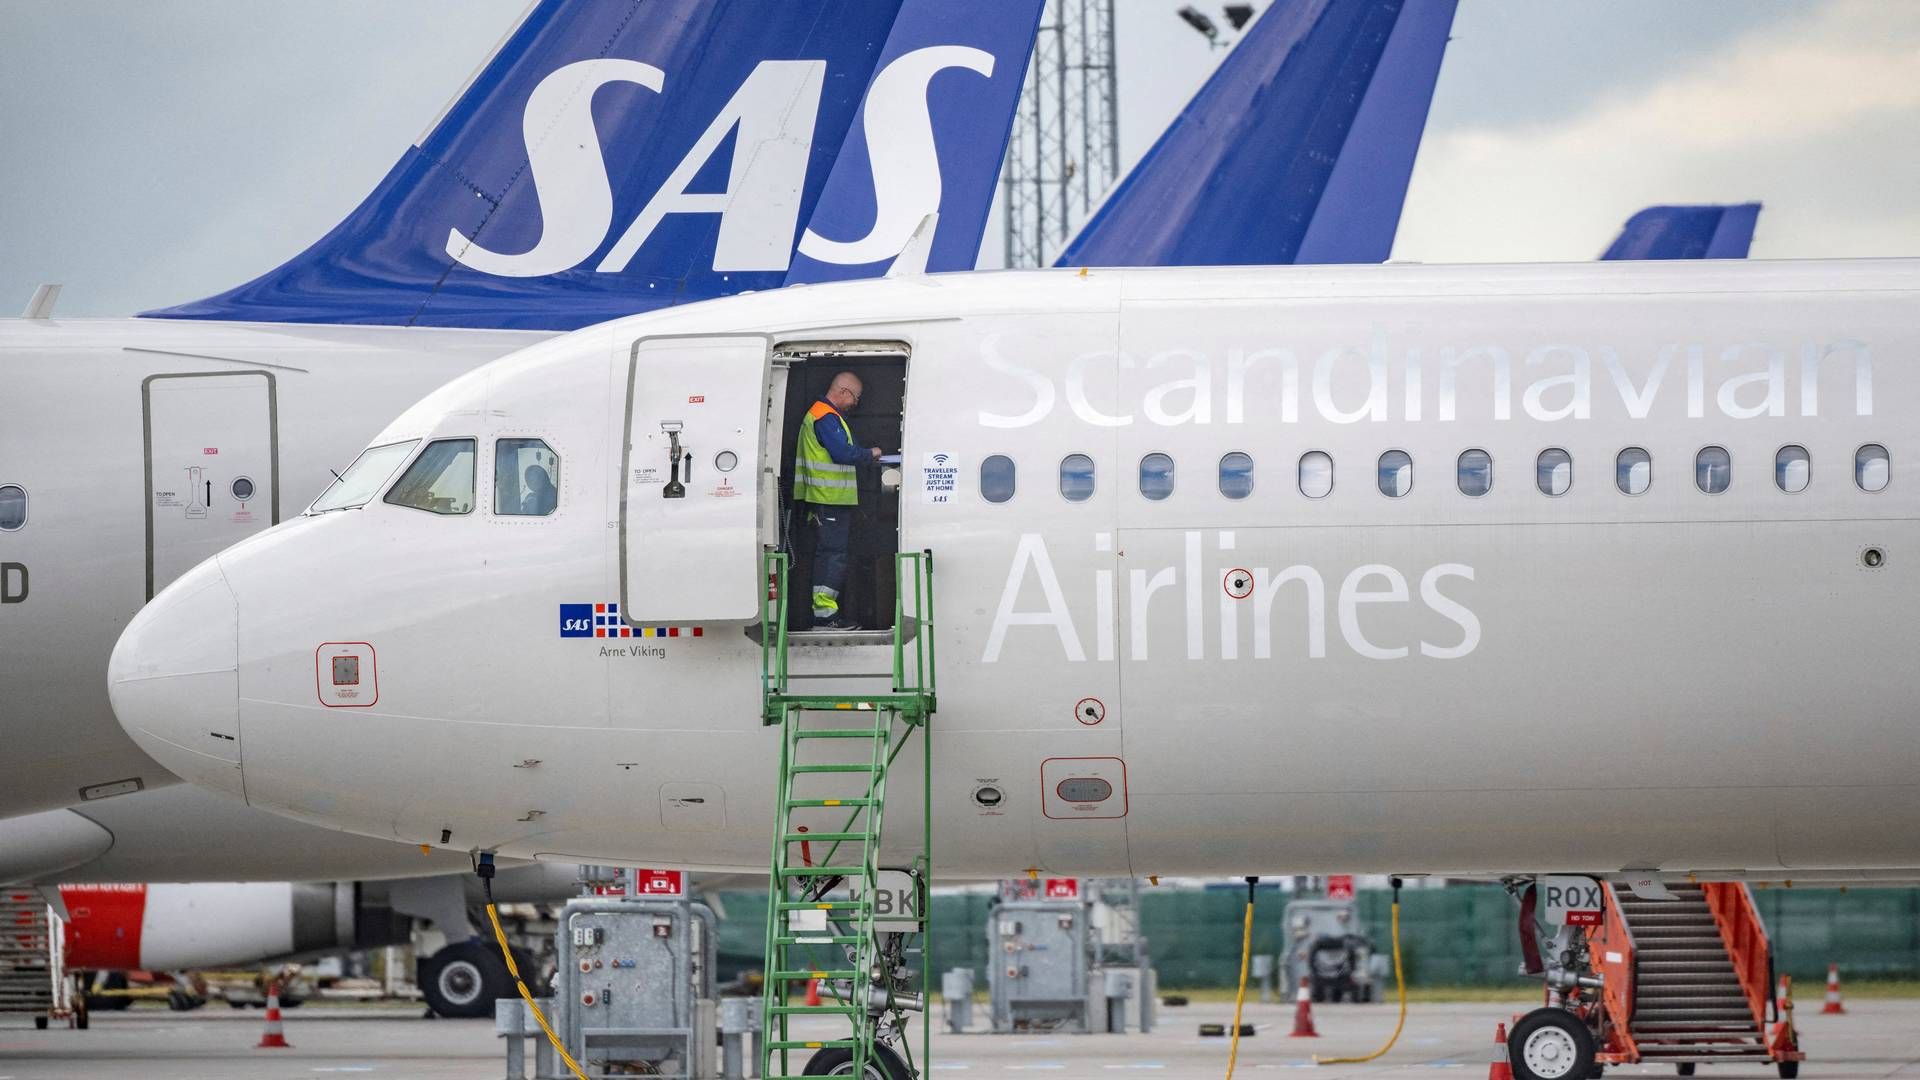 Tirsdag lykkedes det SAS at indgå en aftale om kapitalindsprøjtning, der sikrer flyselskabet sin overlevelse og frisk kapital på 8 mia. kr. | Foto: Tt News Agency/Reuters/Ritzau Scanpix